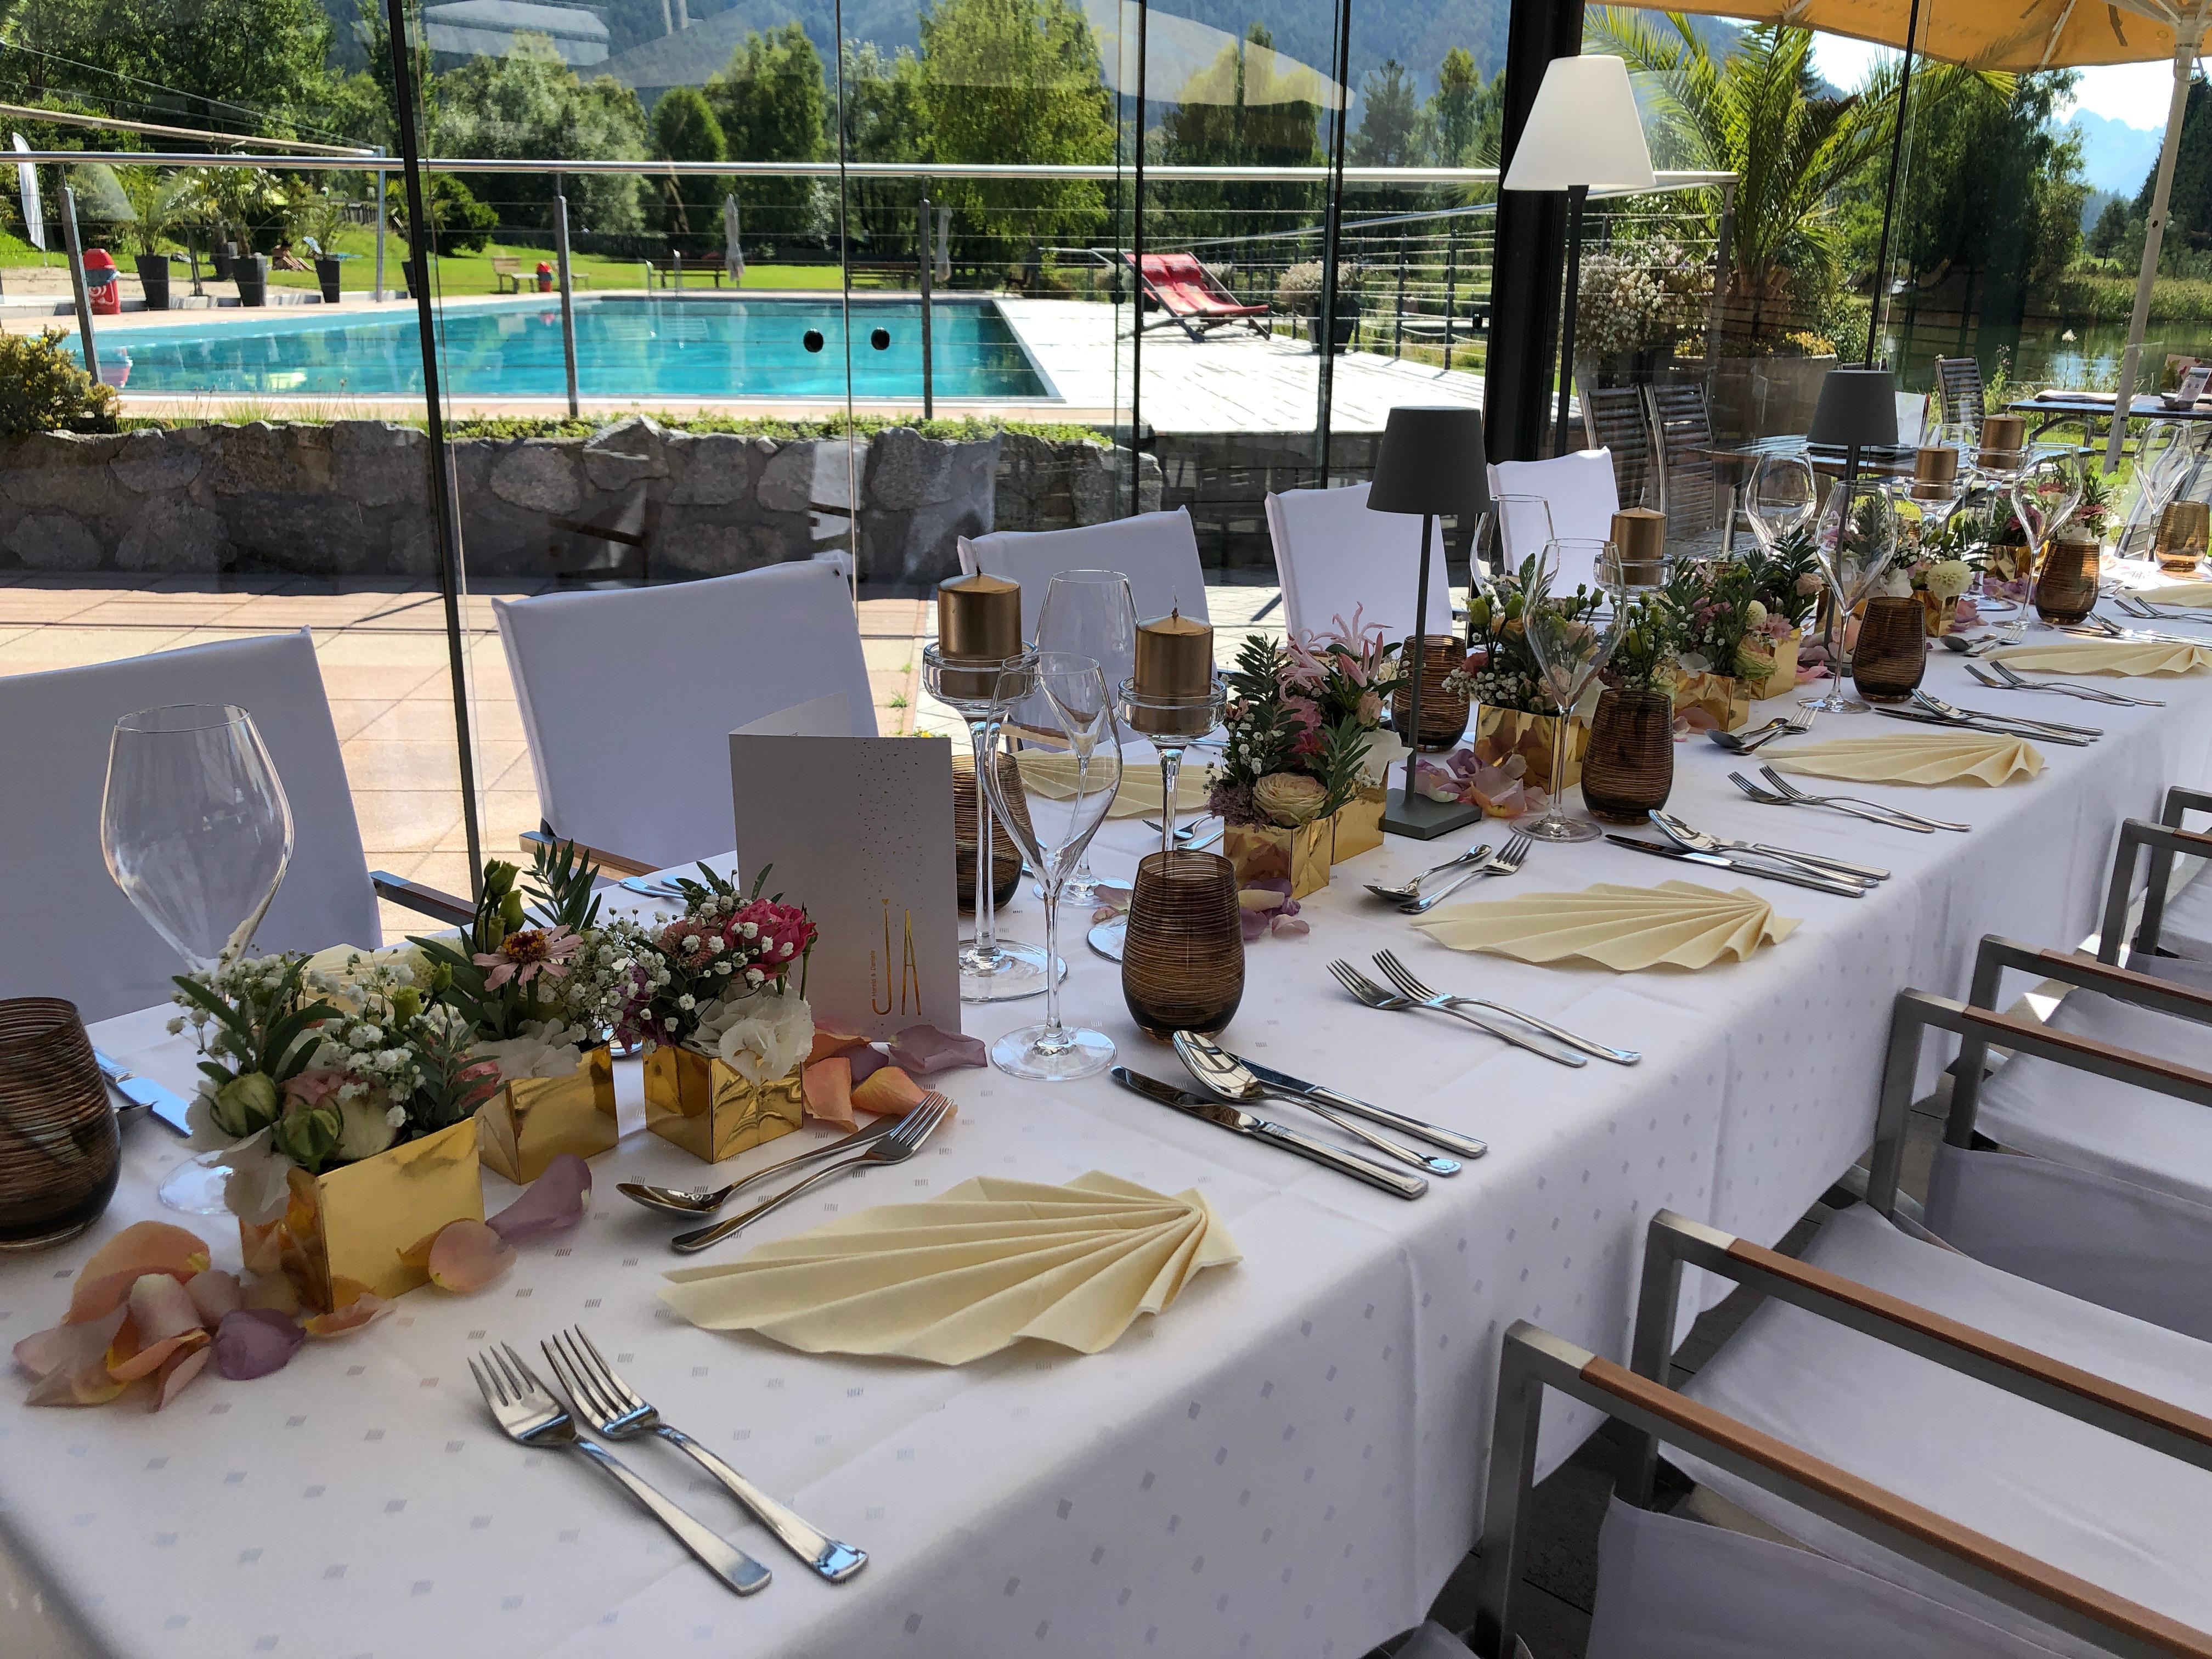 Bilder Restaurant & Bar - Strandperle Seefeld | Location für Hochzeiten & Firmenfeiern